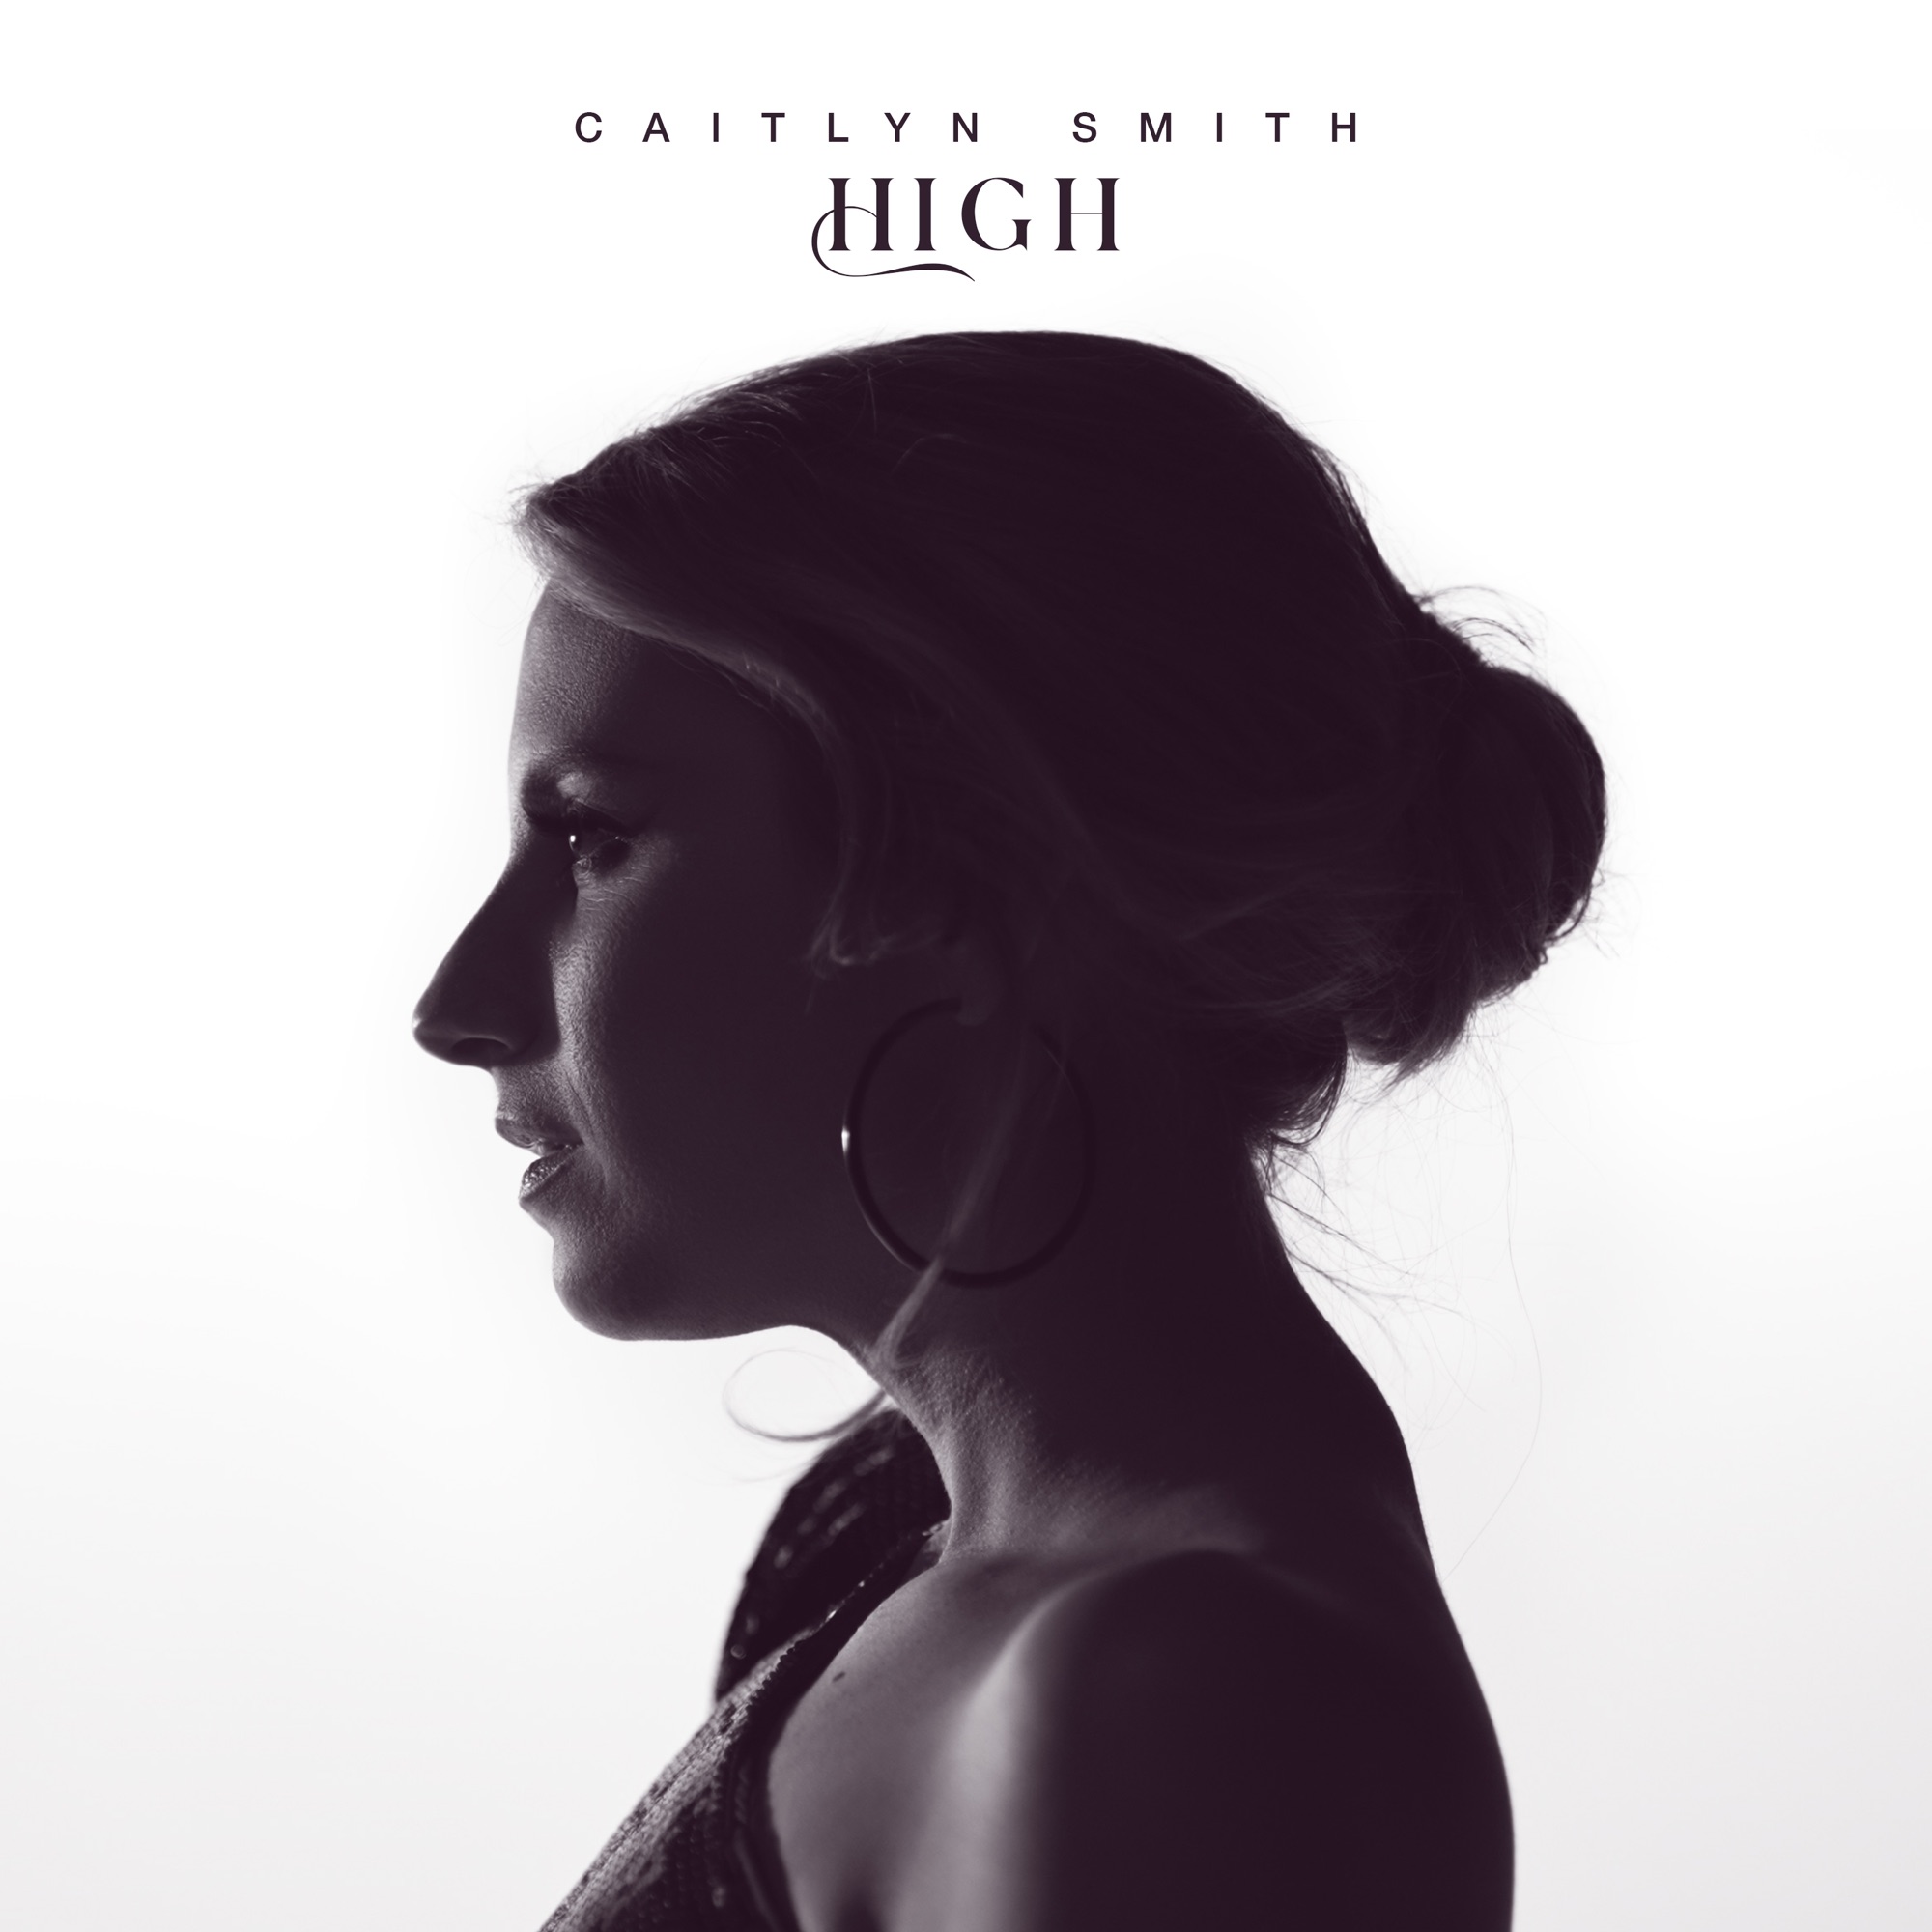 Caitlyn Smith High cover artwork